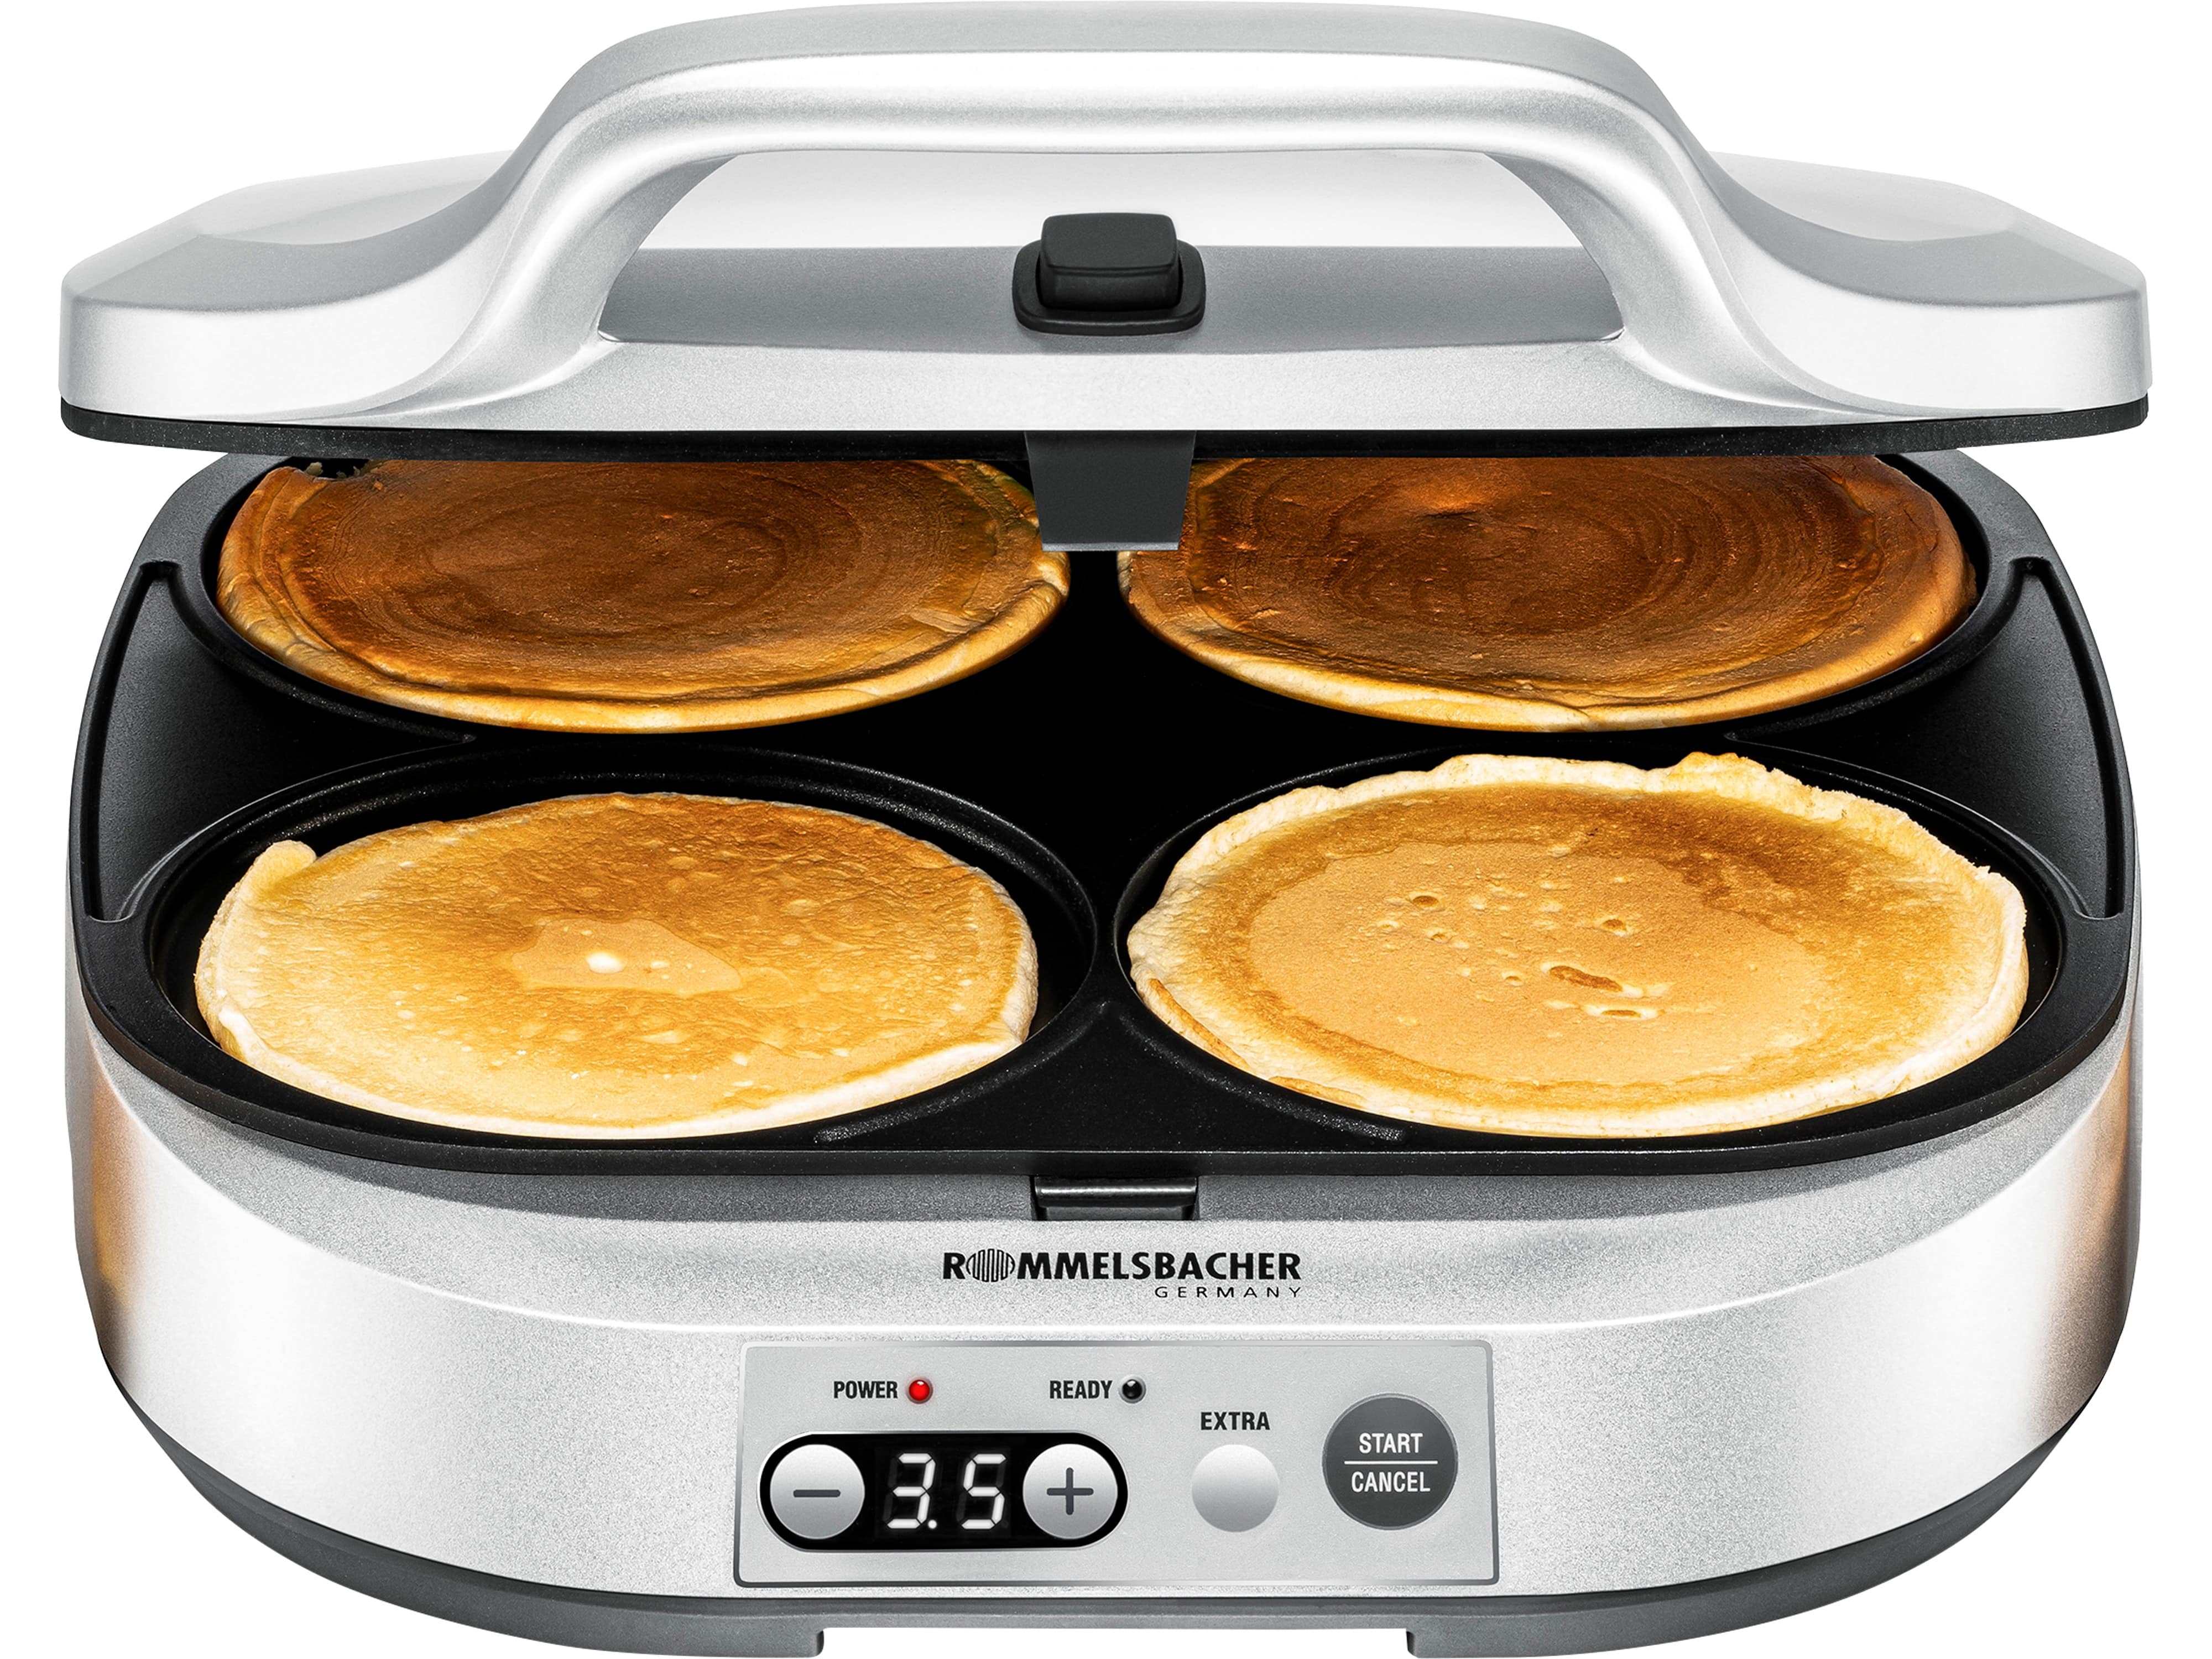 ROMMELSBACHER Pancake Maker PC 1800